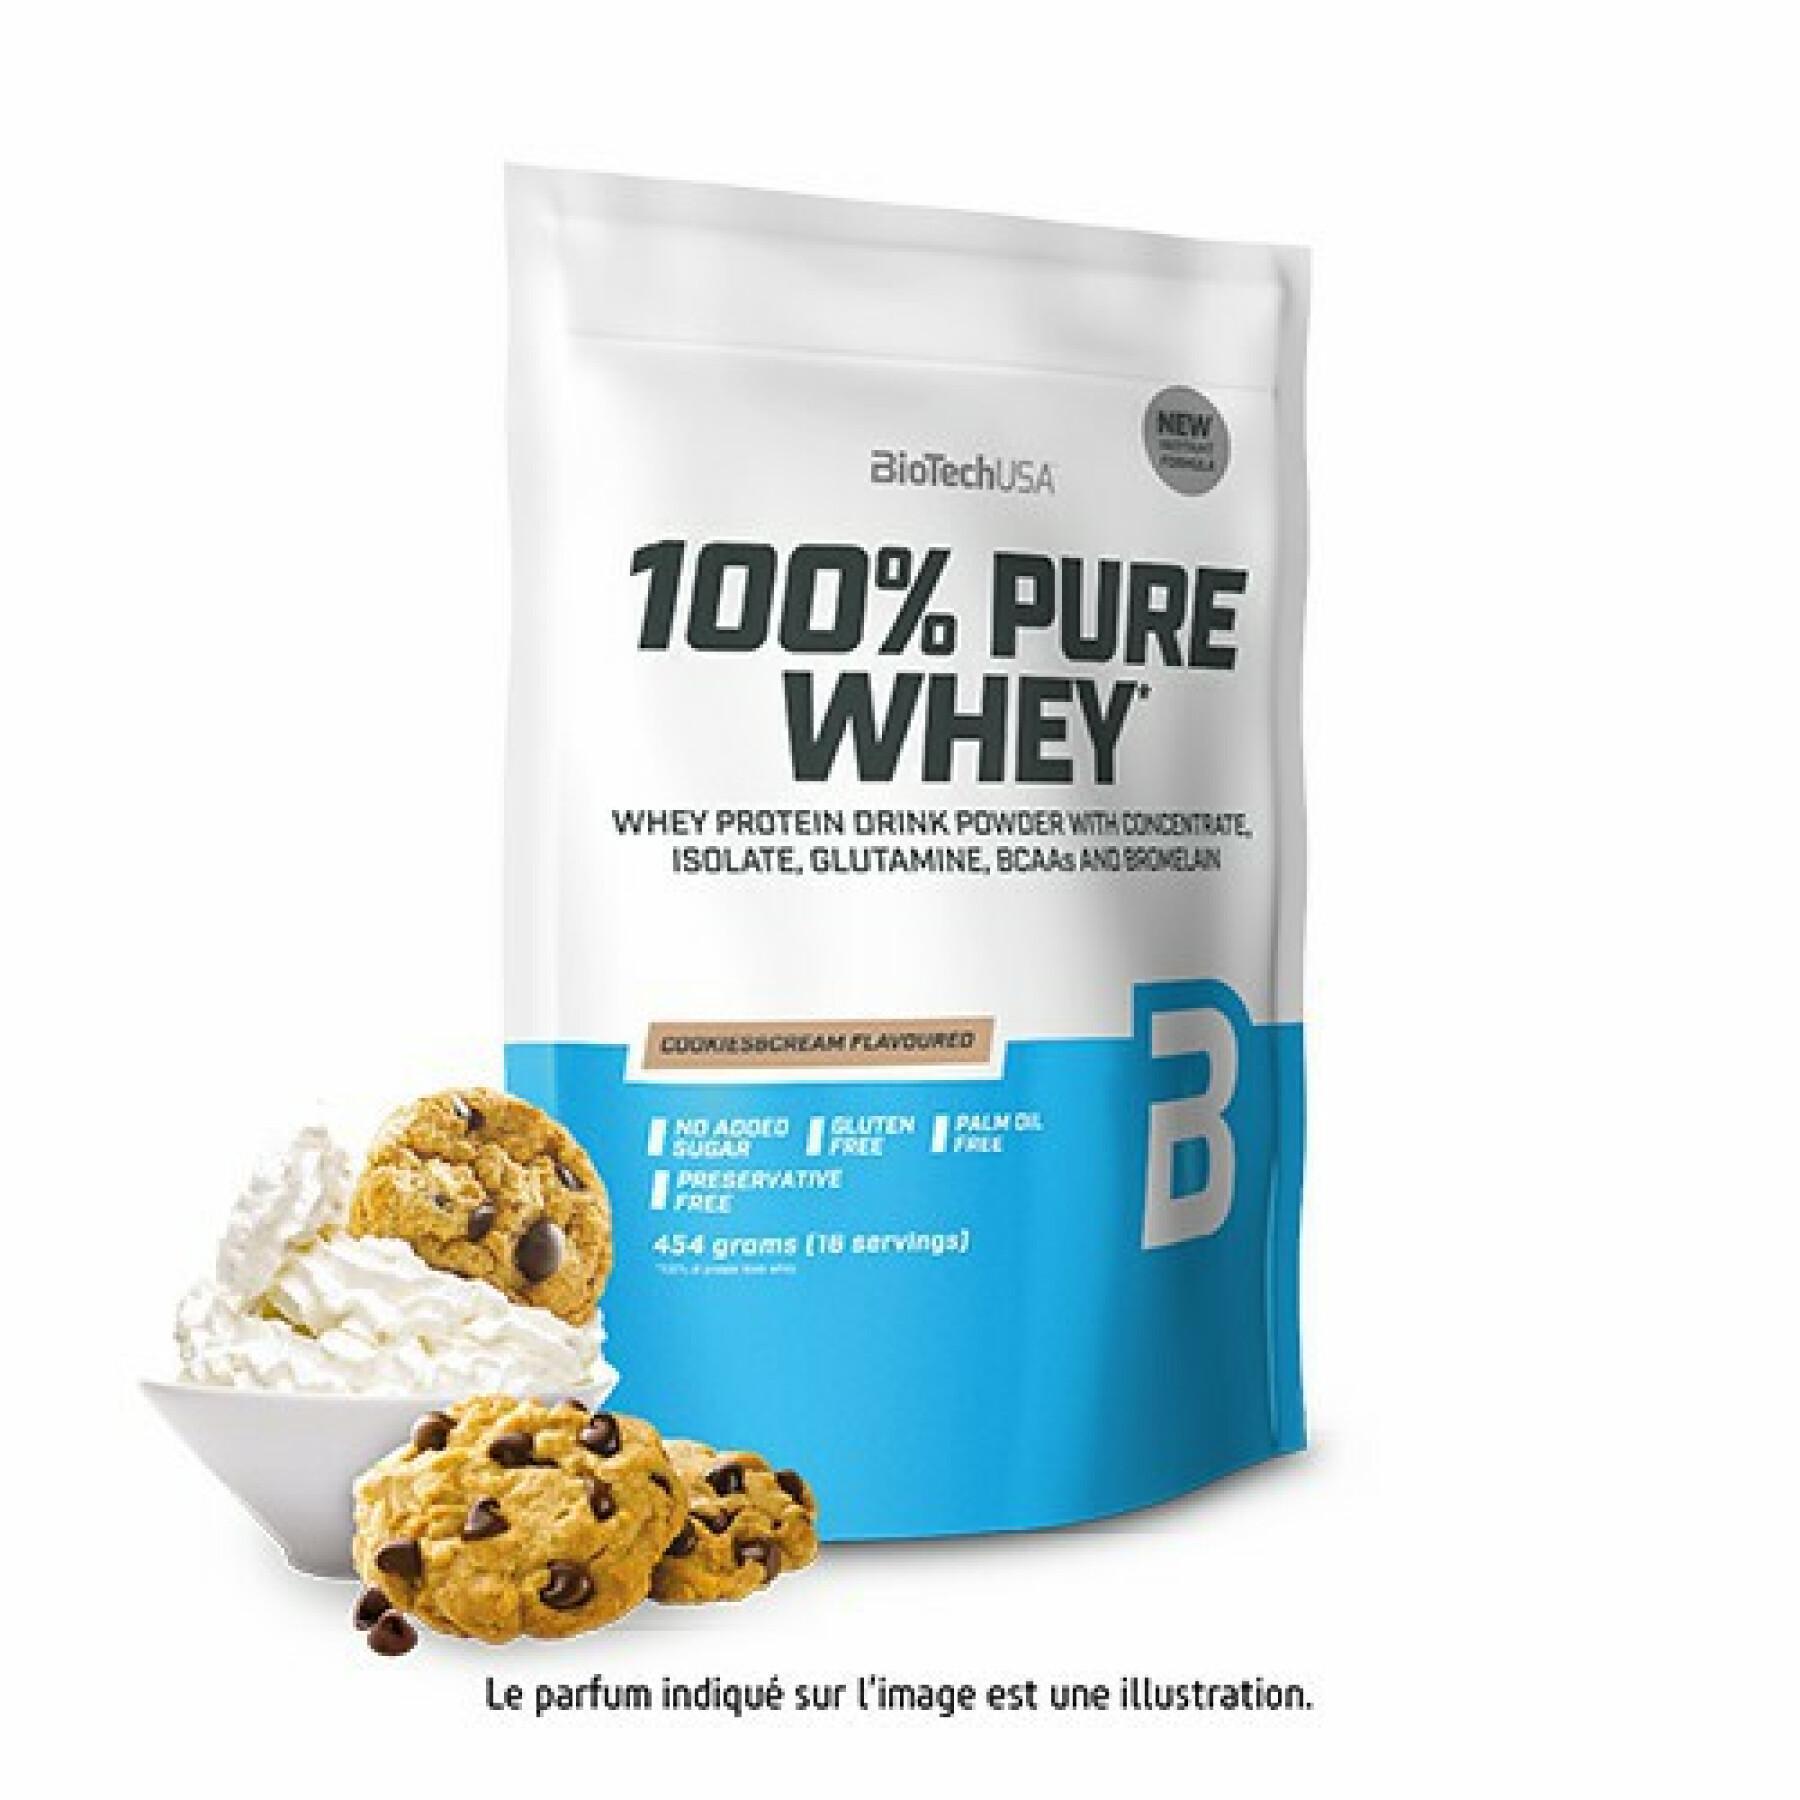 Paquete de 10 bolsas de proteína de suero 100% pura Biotech USA - Black Biscuit - 454g